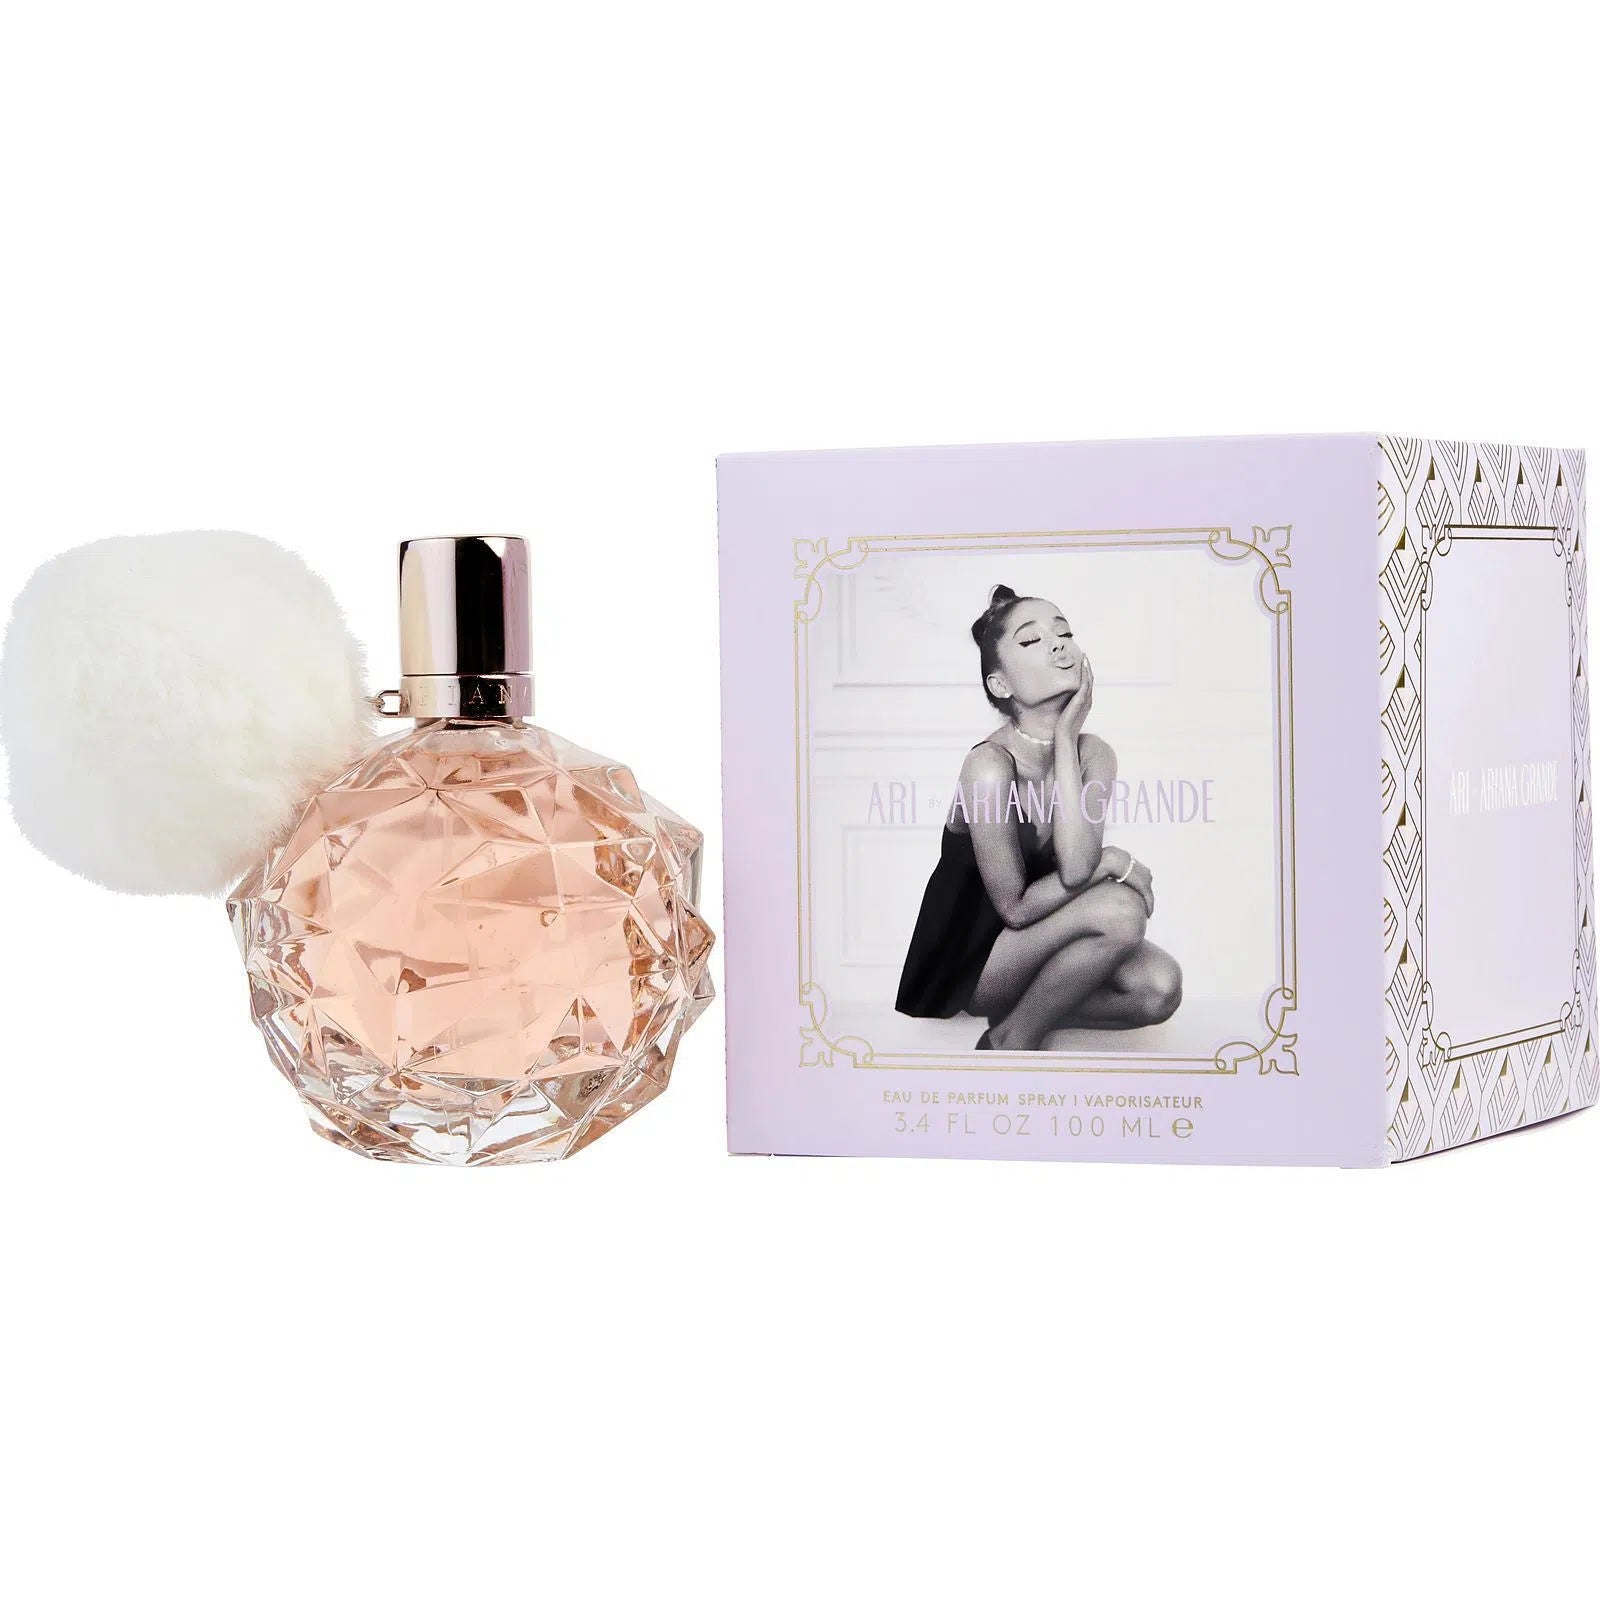 Perfume Ariana Grande Ari EDP (W) / 100 ml - 812256020301- Prive Perfumes Honduras